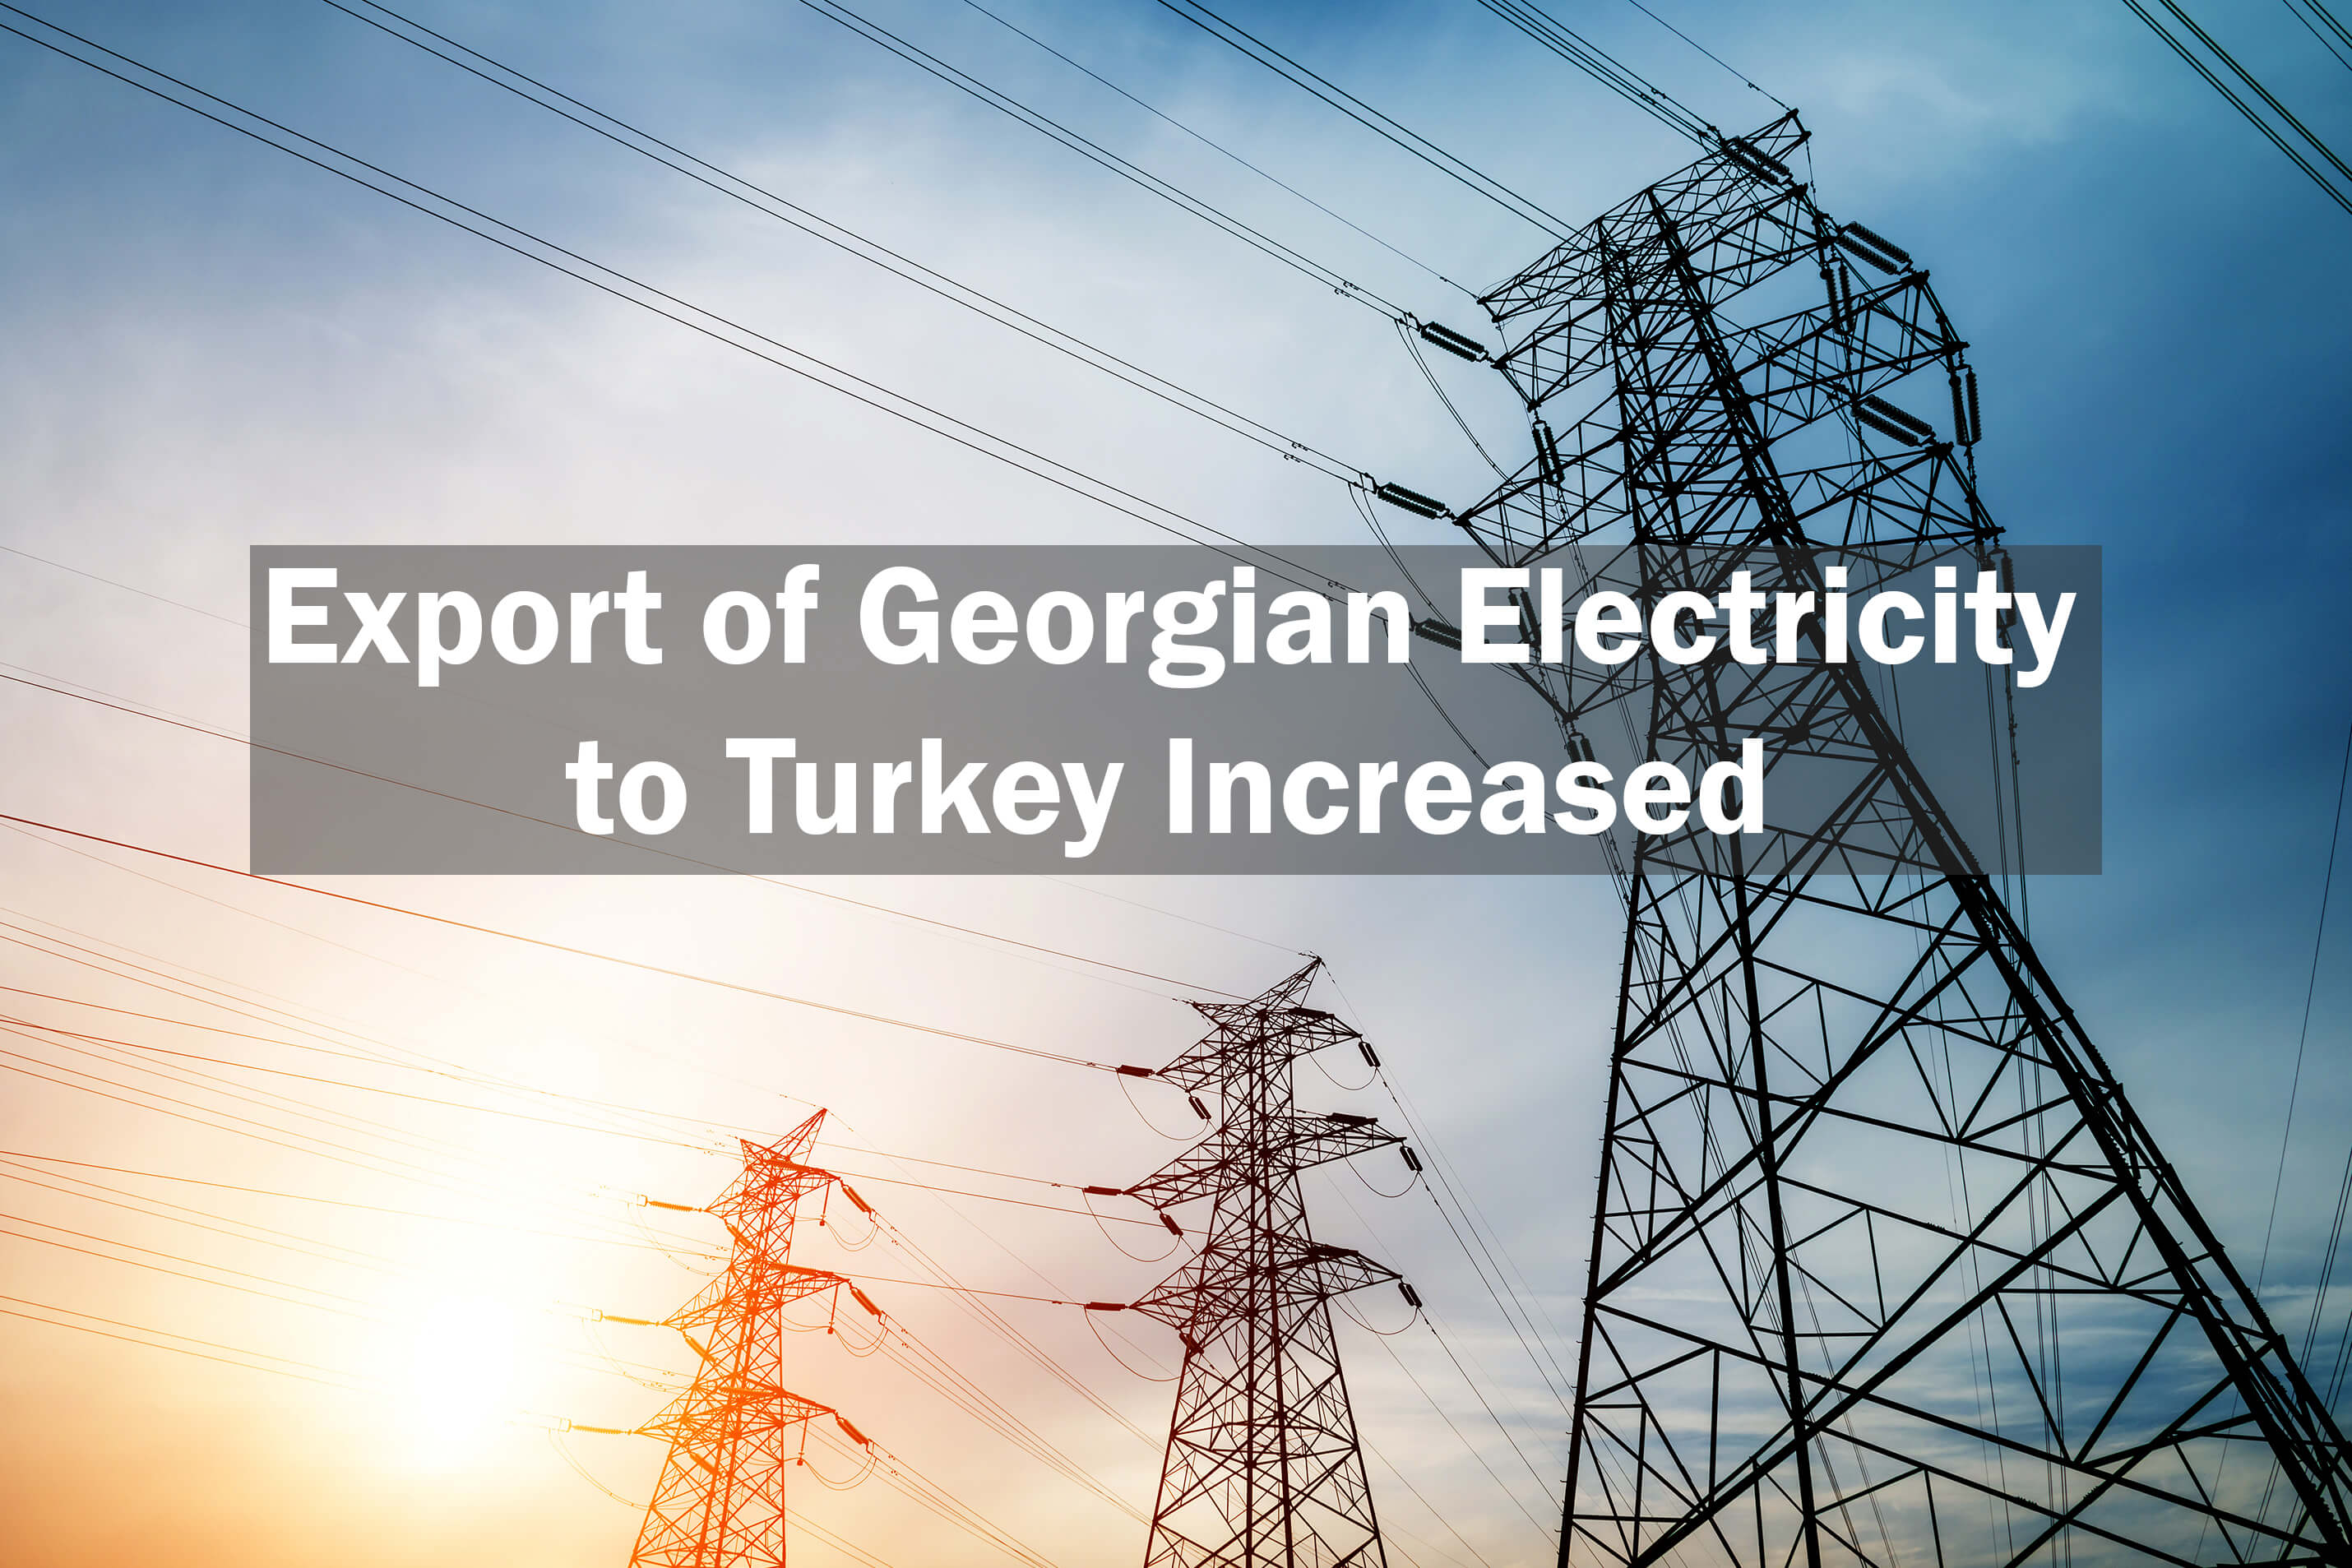 بدأت جورجيا في تصدير الكهرباء إلى تركيا وروسيا